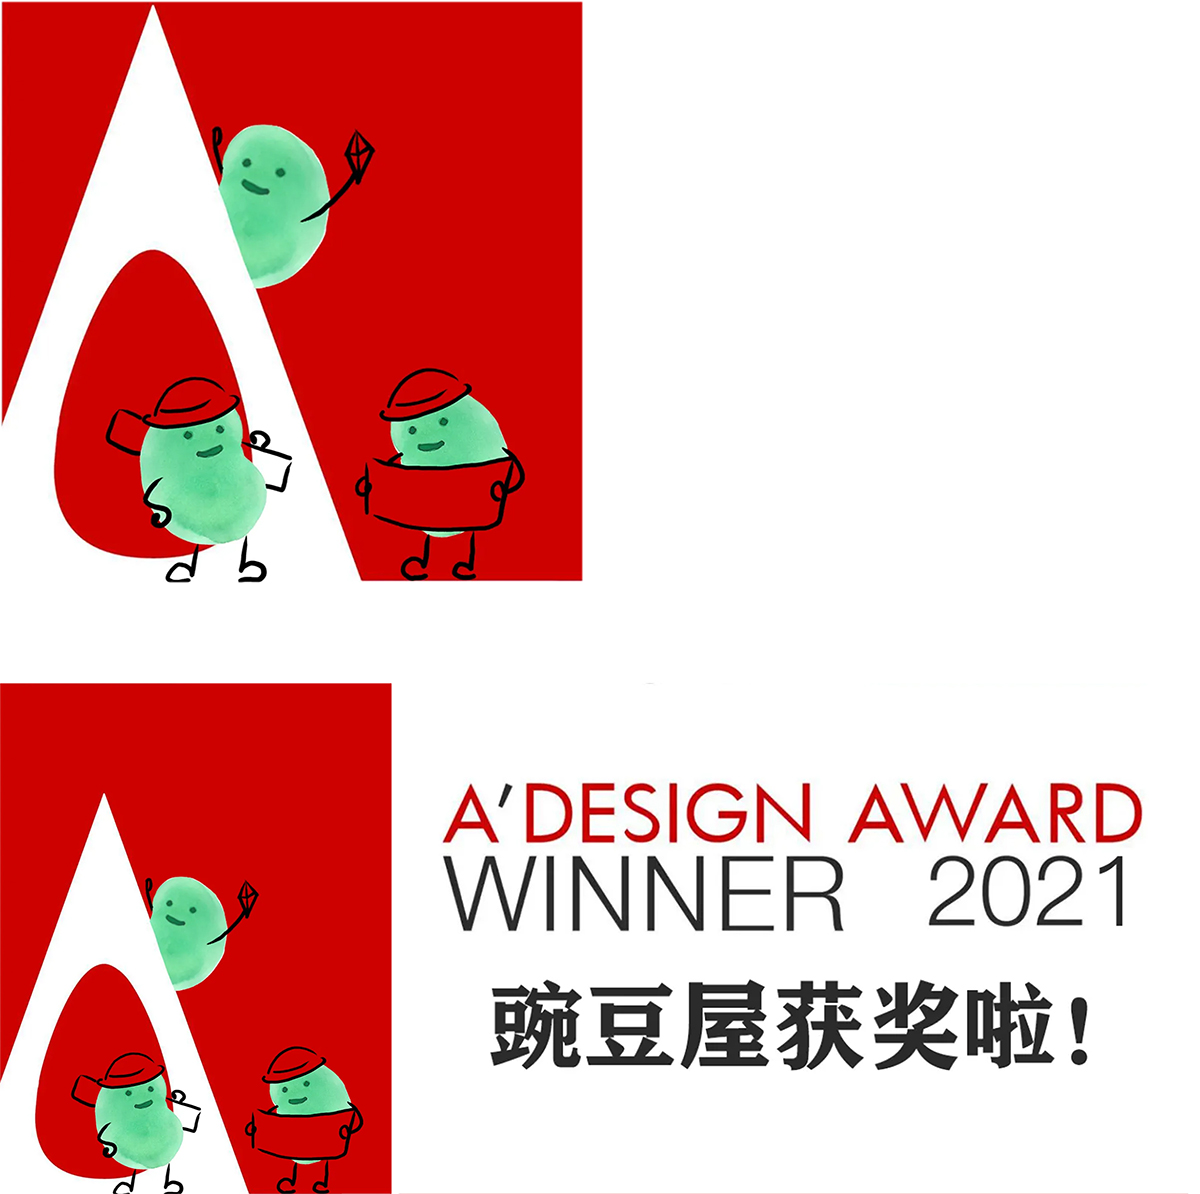 豌豆屋荣获2021年度A' Design Award大奖！